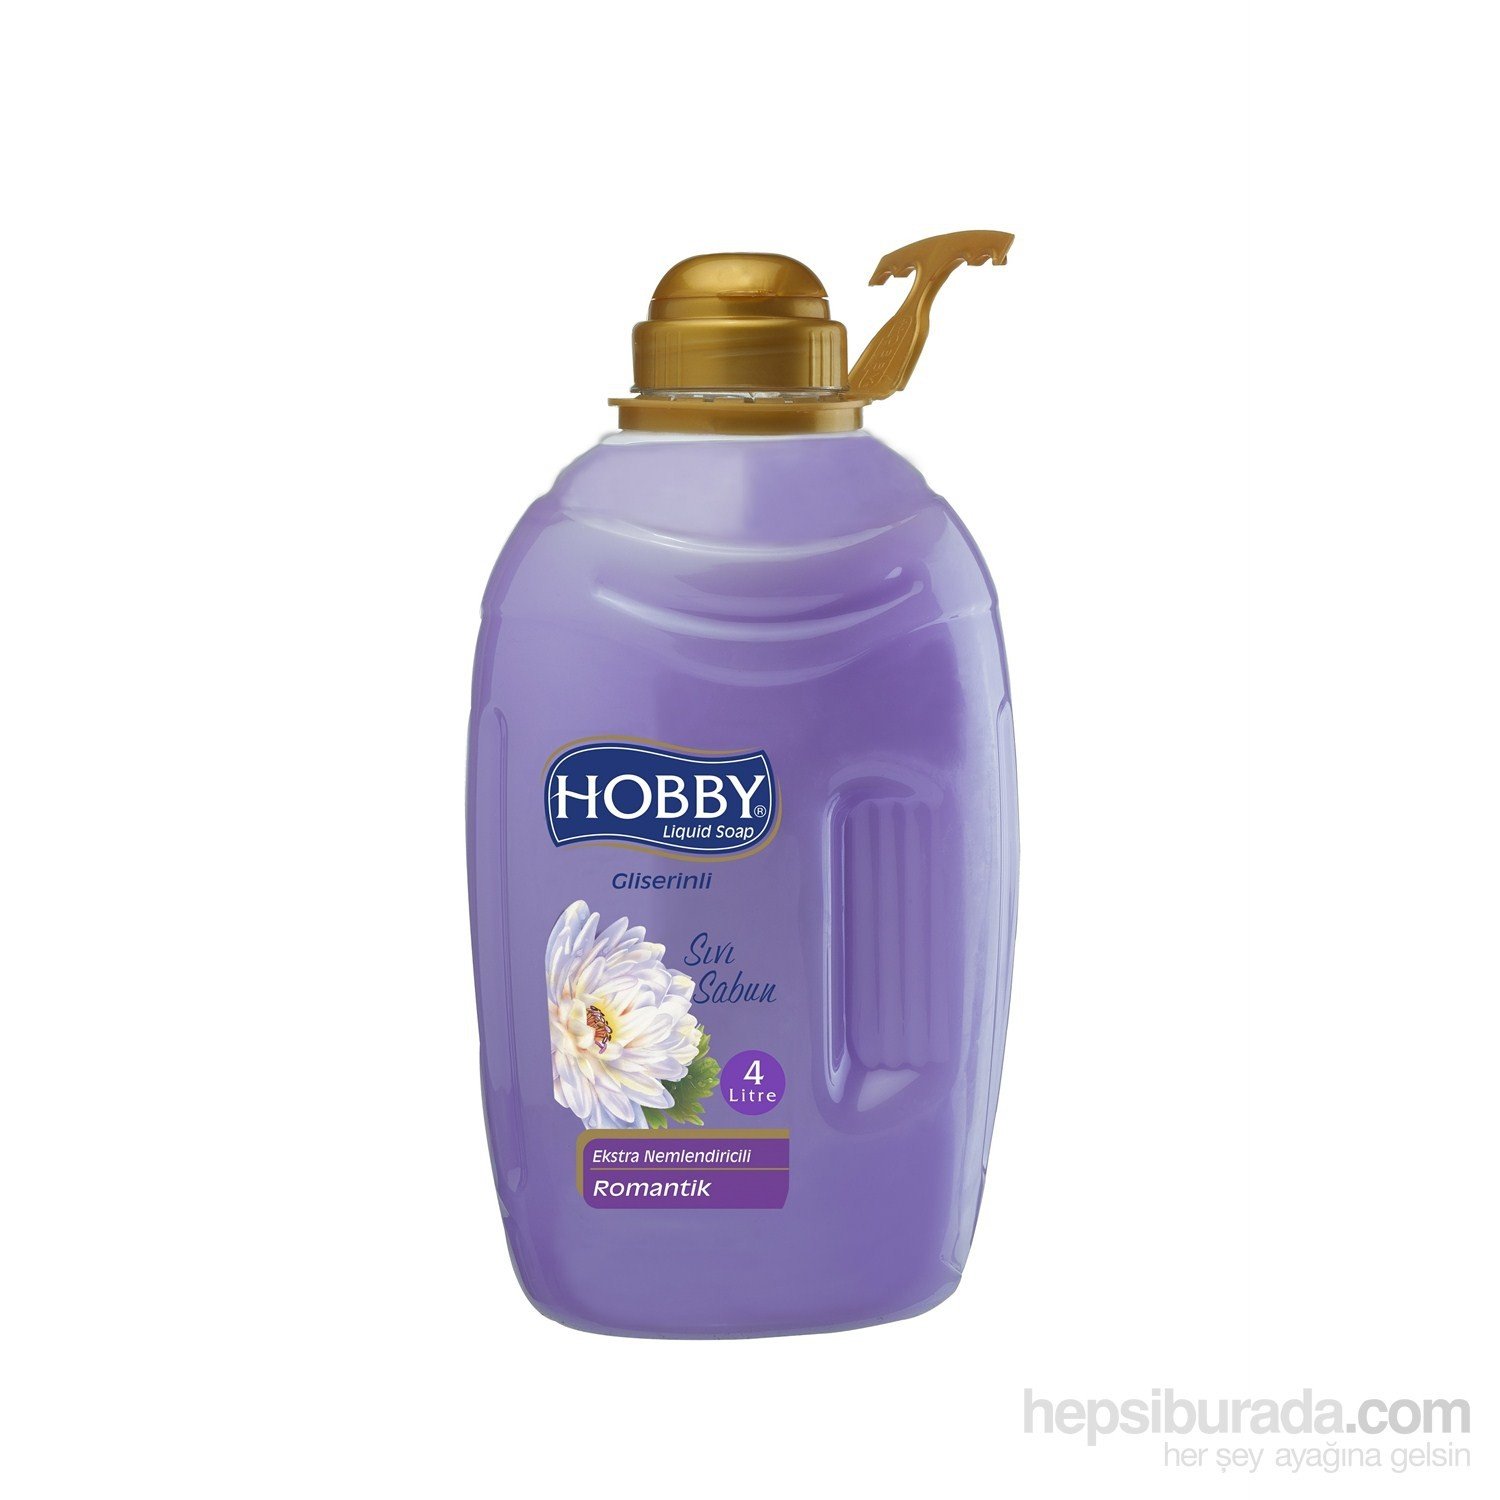 Hobby Sıvı Sabun Gliserinli Romantik 4000 ml